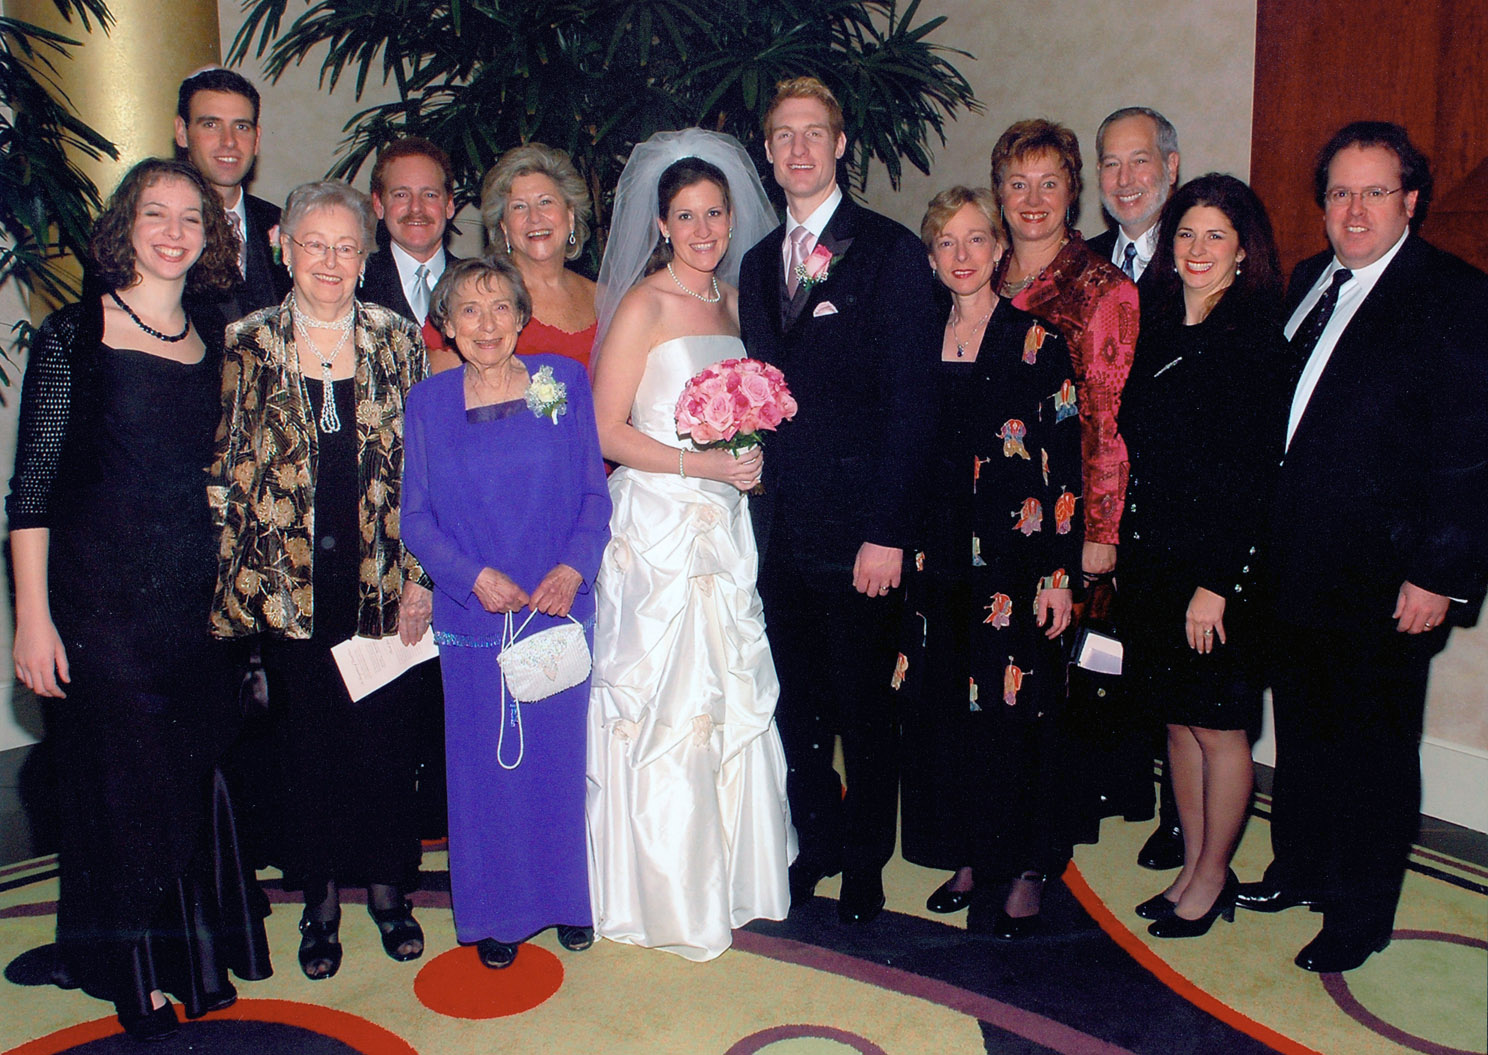 JulieSue Thorner Wedding 2005